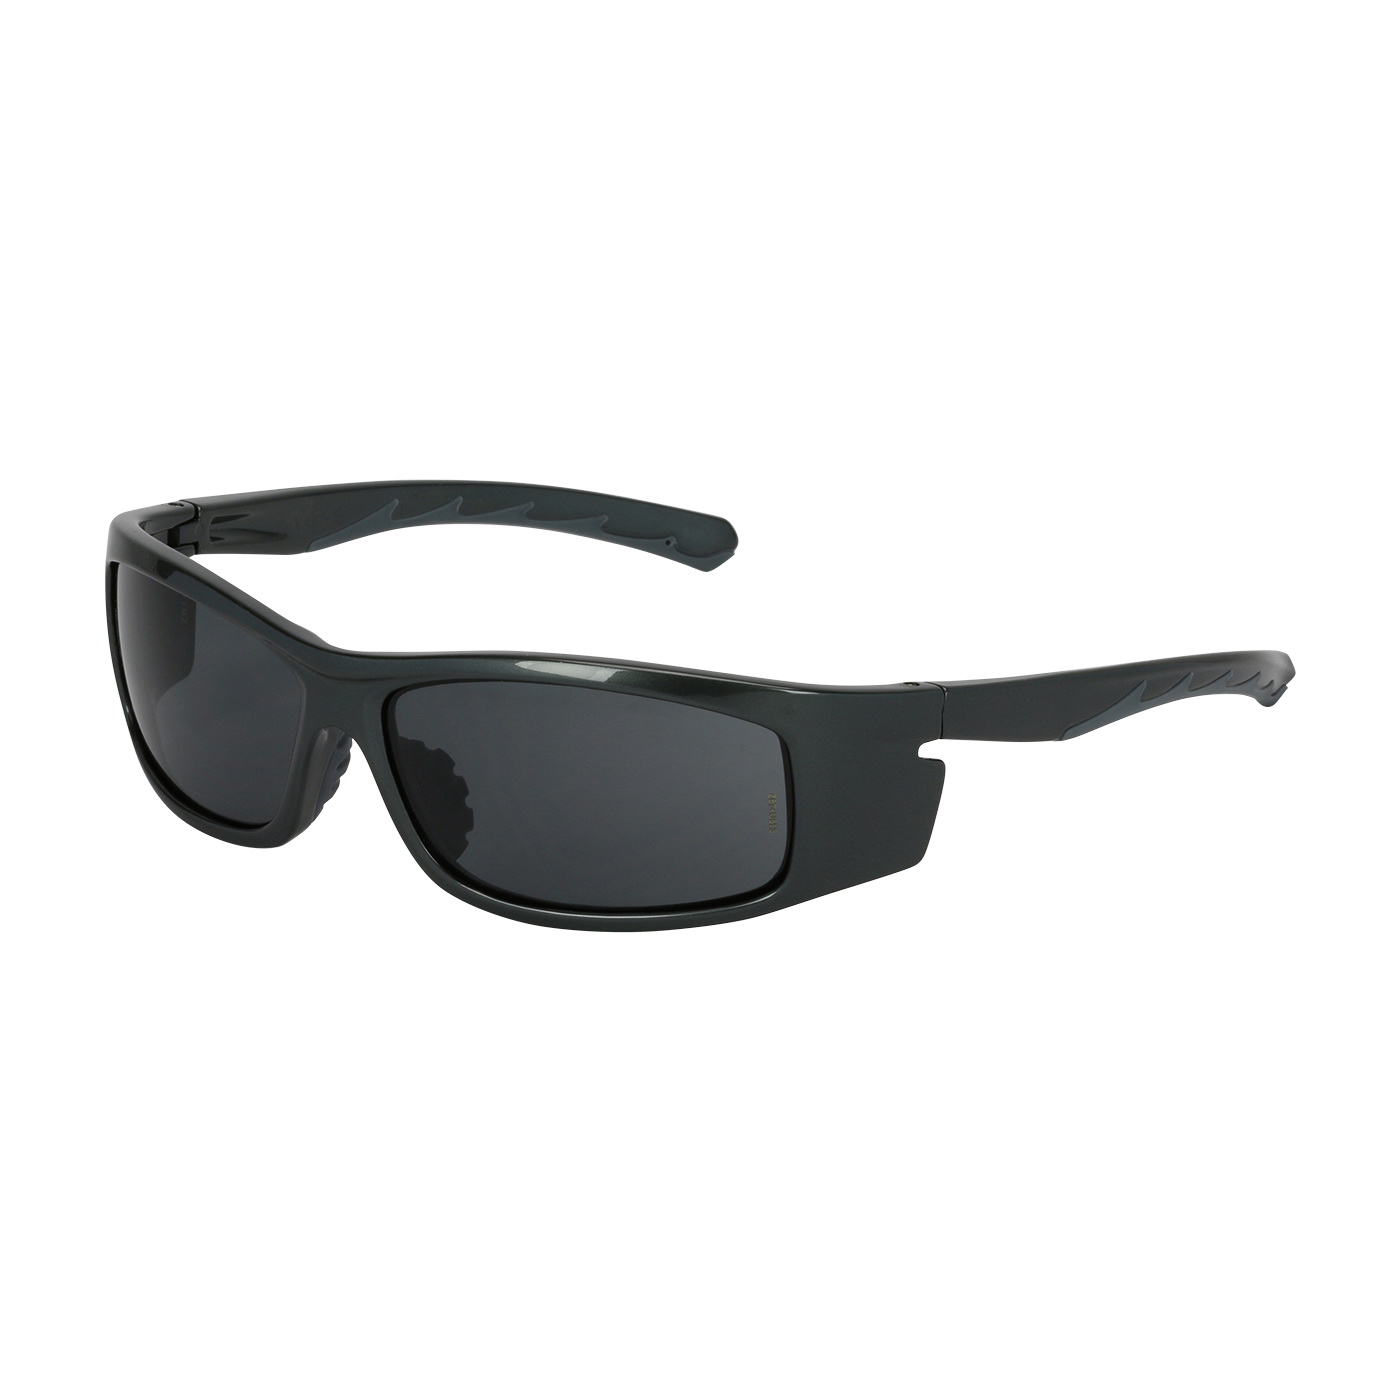 10105403 Safety Glasses, Anti-Fog Lens, Full Frame, Black Frame, UV Protection